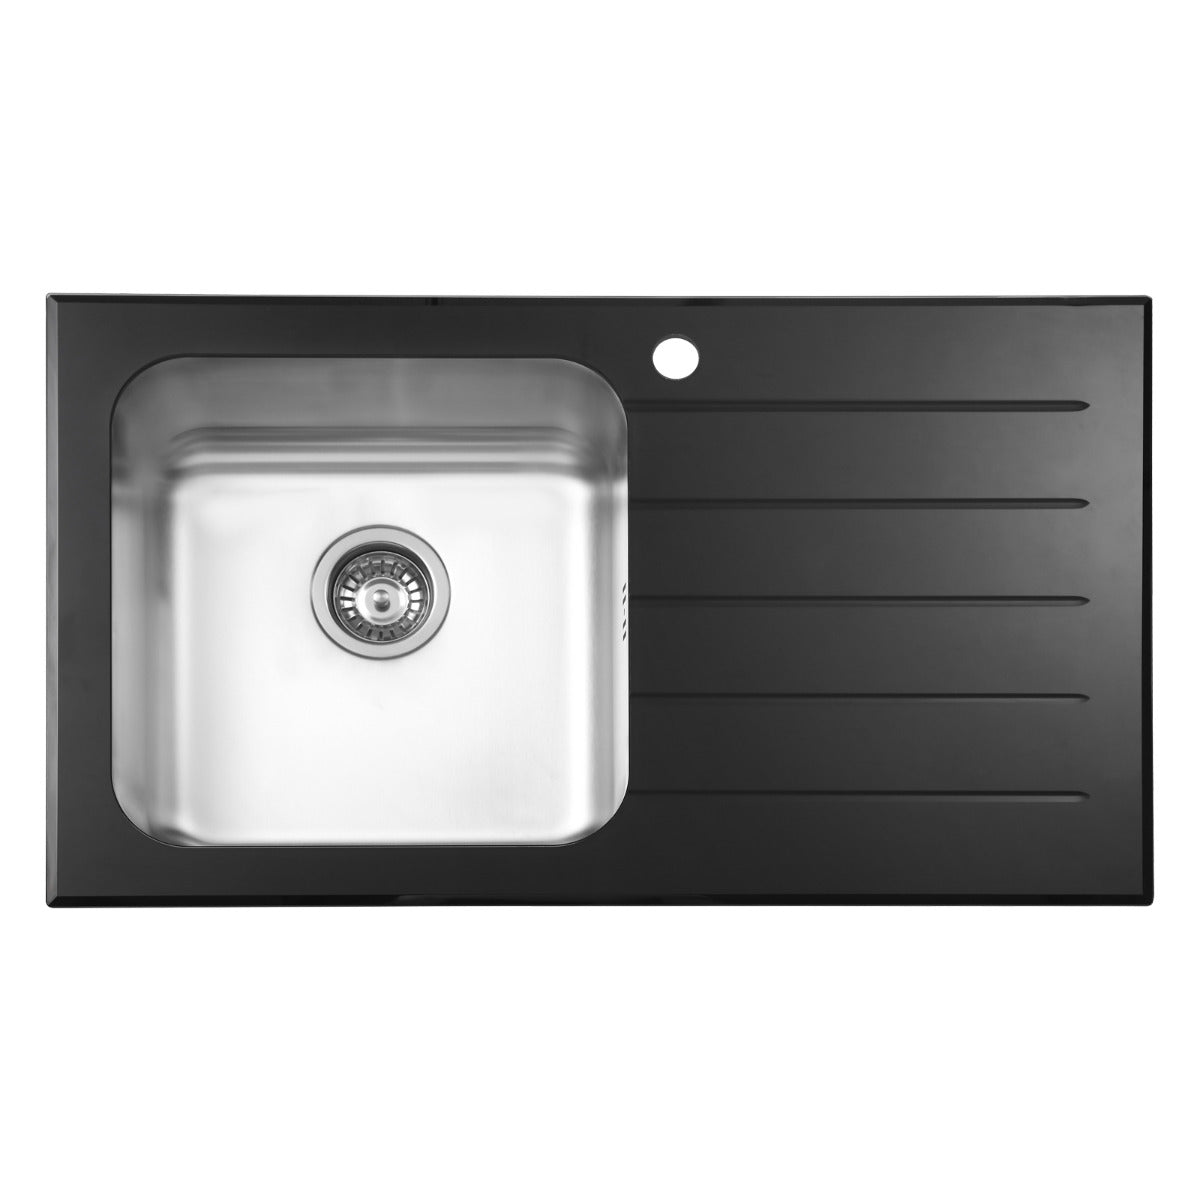 JassferryJASSFERRY Black Glass Top Kitchen Sink 1 Stainless Steel Bowl Righthand Drainer - 772BKitchen Sink